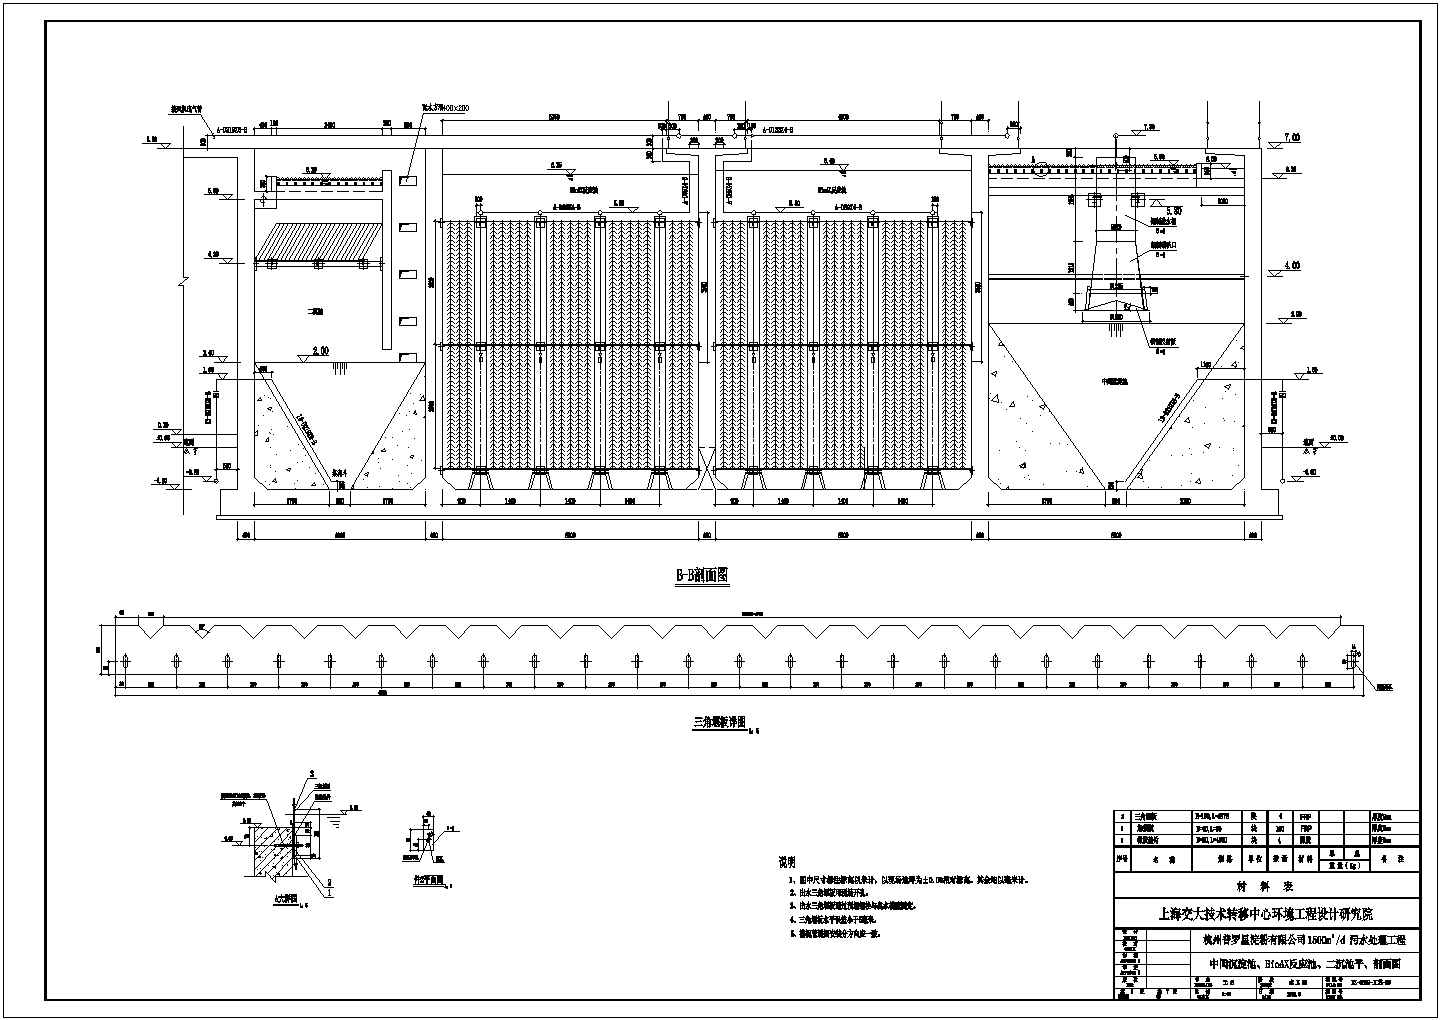 杭州某淀粉厂污水处理站中间沉淀池BioAX反应池二沉池平CAD给排水设计剖面图